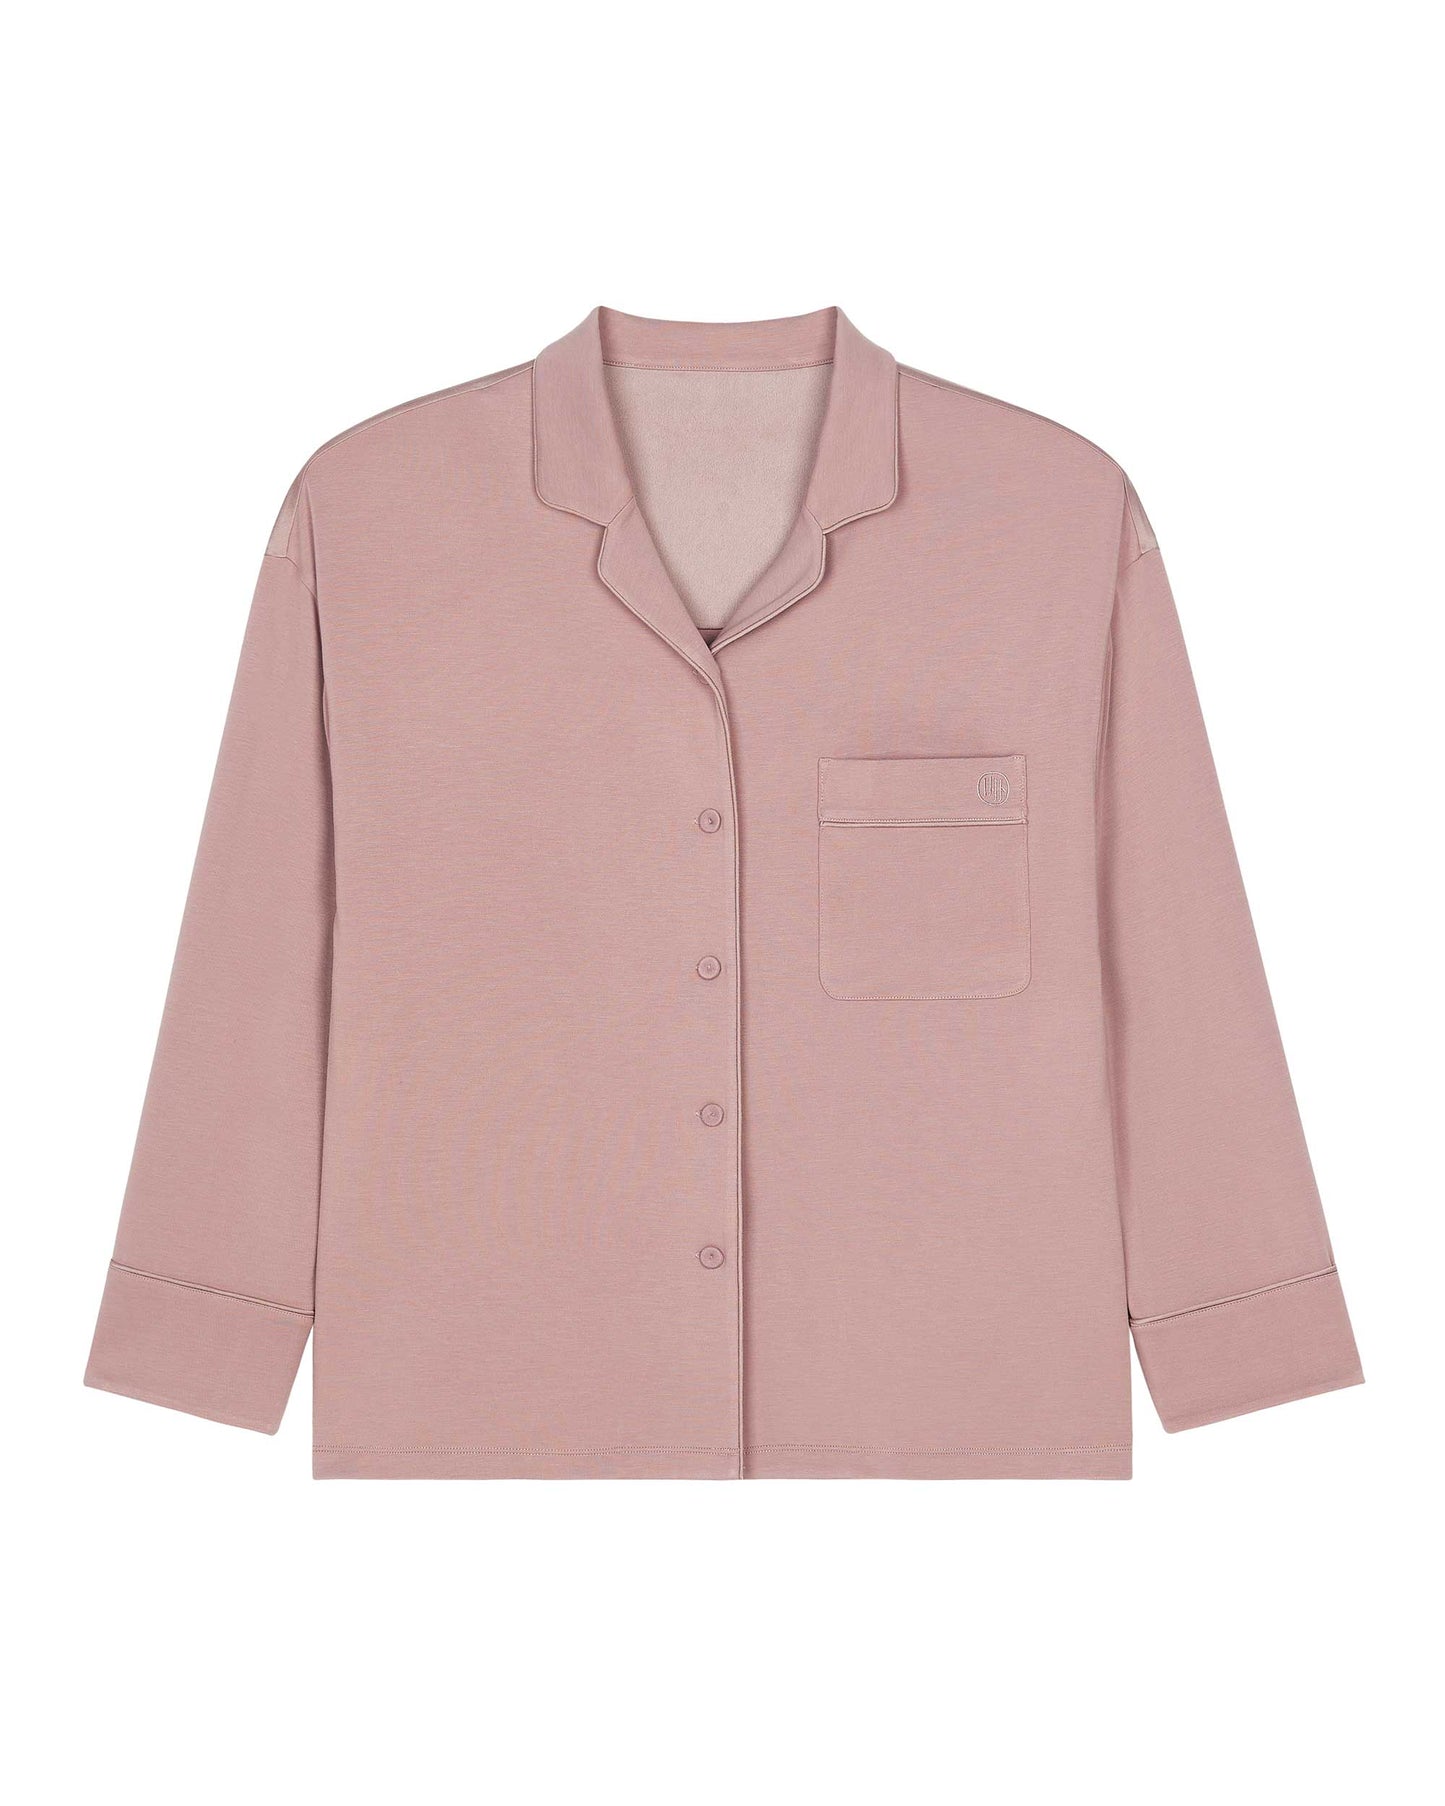 A pink pajama shirt